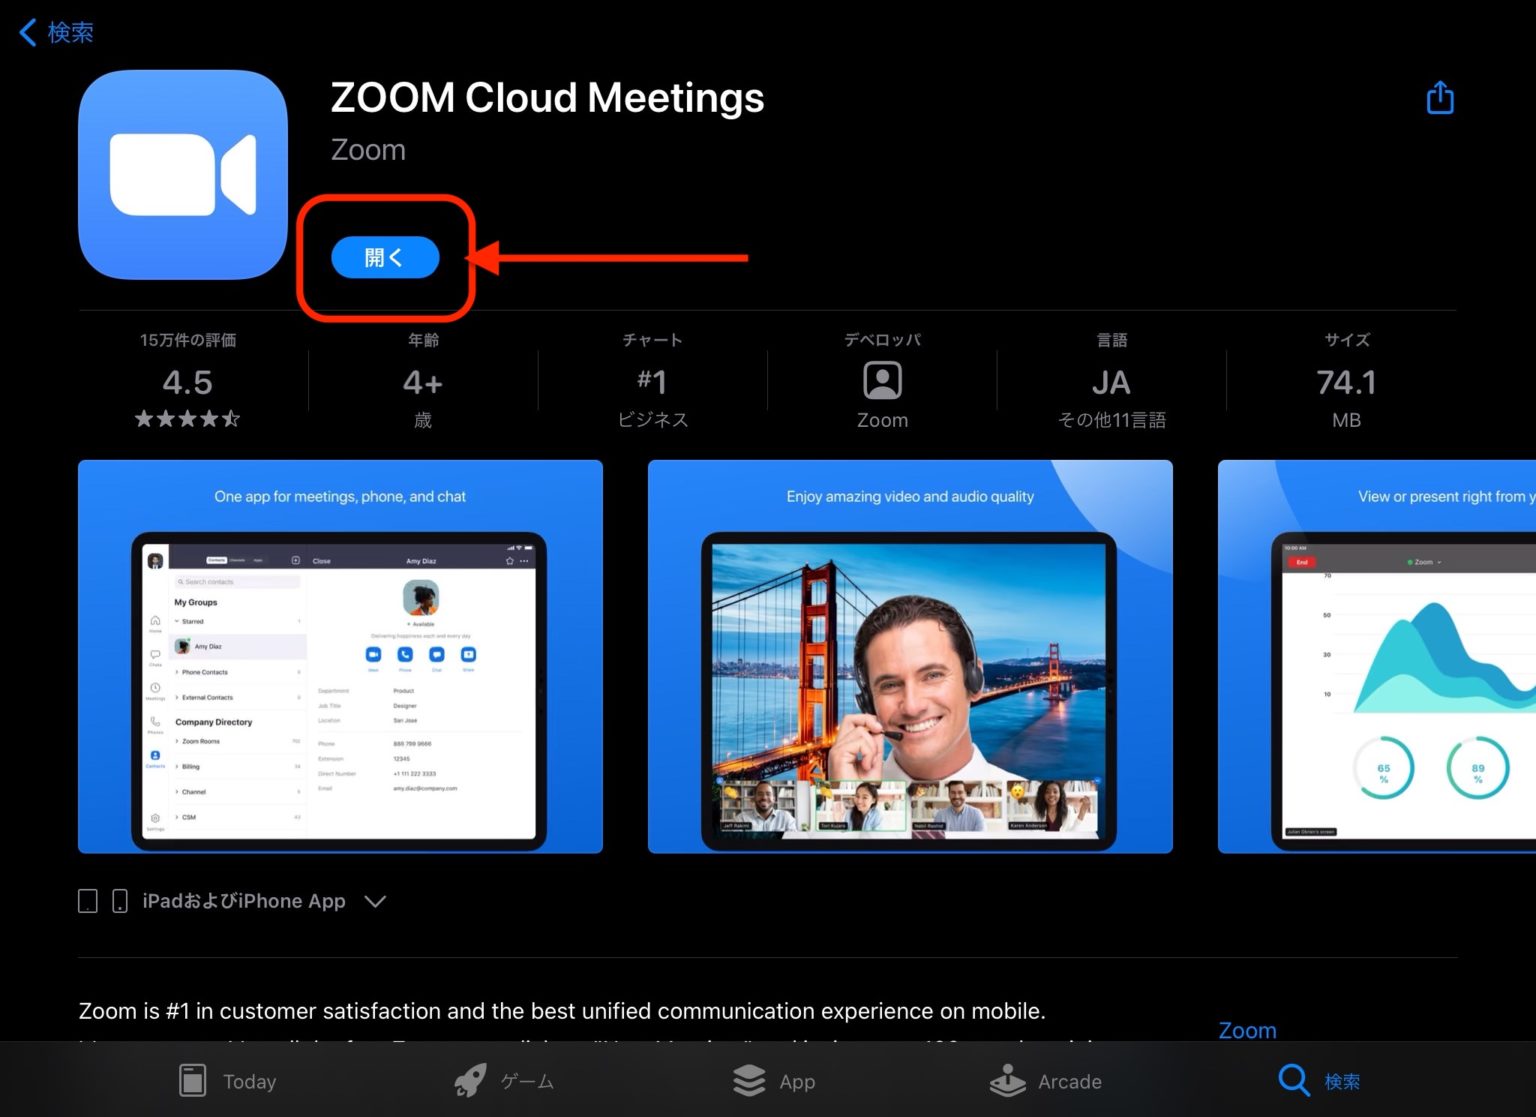 zoom cloud meetings for ipad